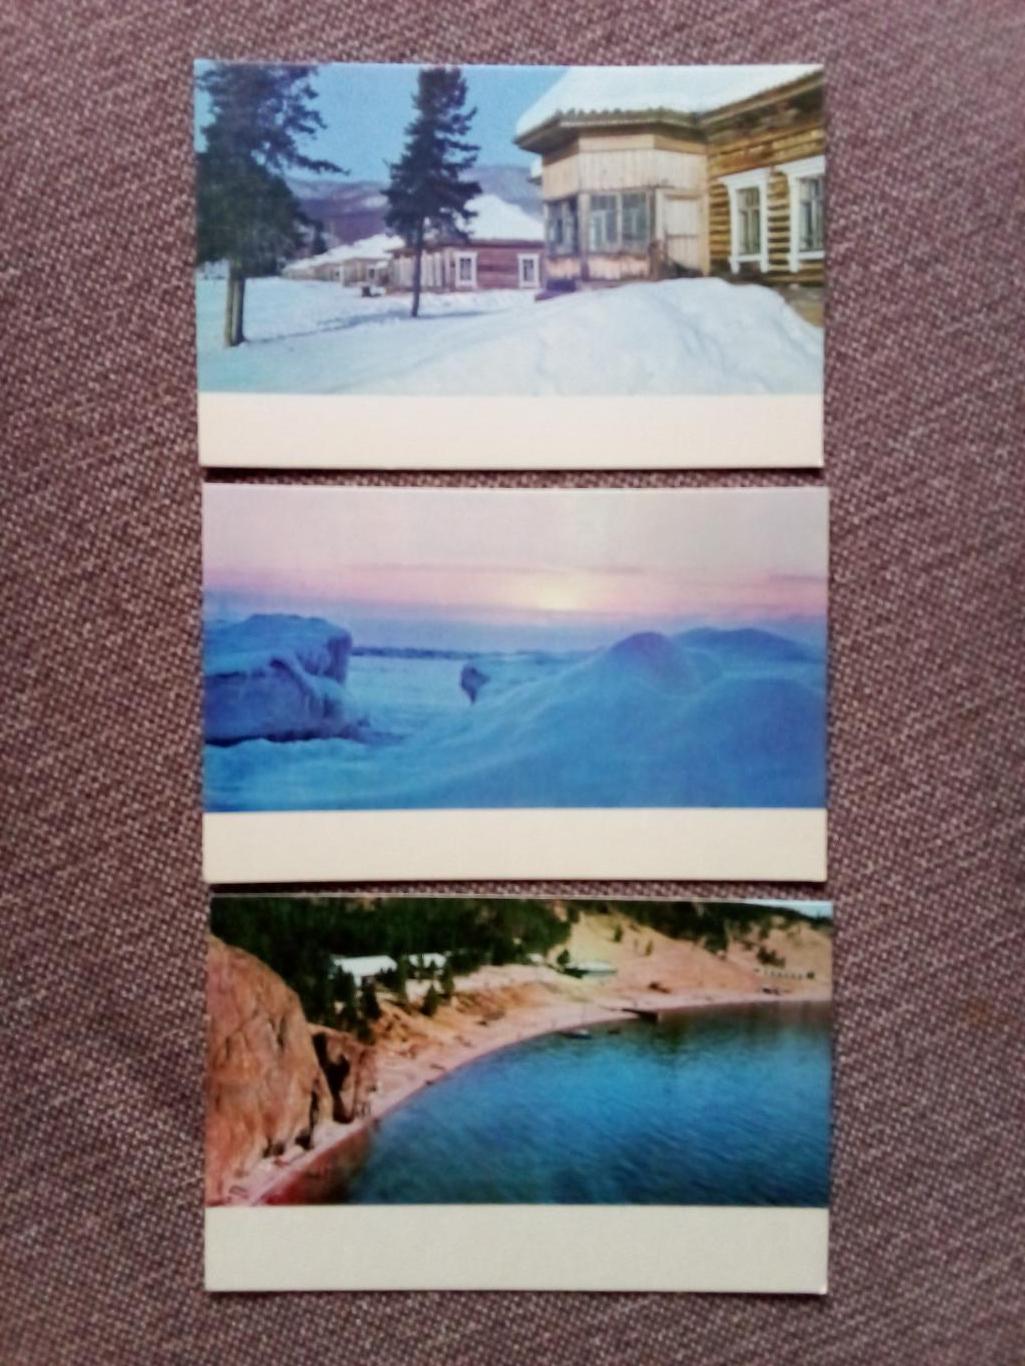 Памятные места СССР : Озеро Байкал 1971 г. полный набор - 15 открыток (чистые) 5